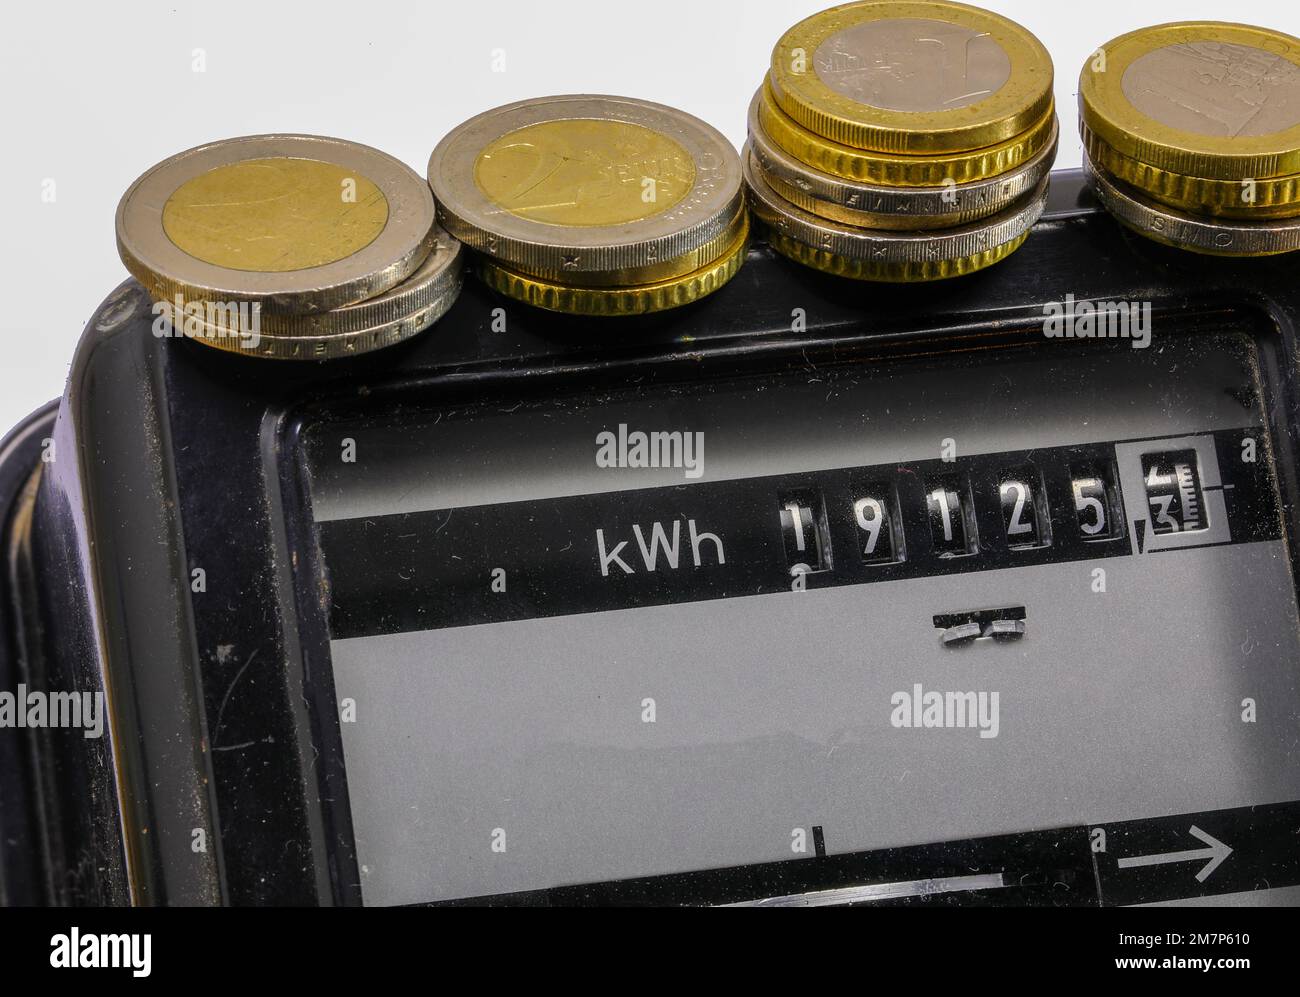 Compteur électrique ancien avec les nombres en kwh pour mesurer l'électricité consommée et les pièces en euros Banque D'Images